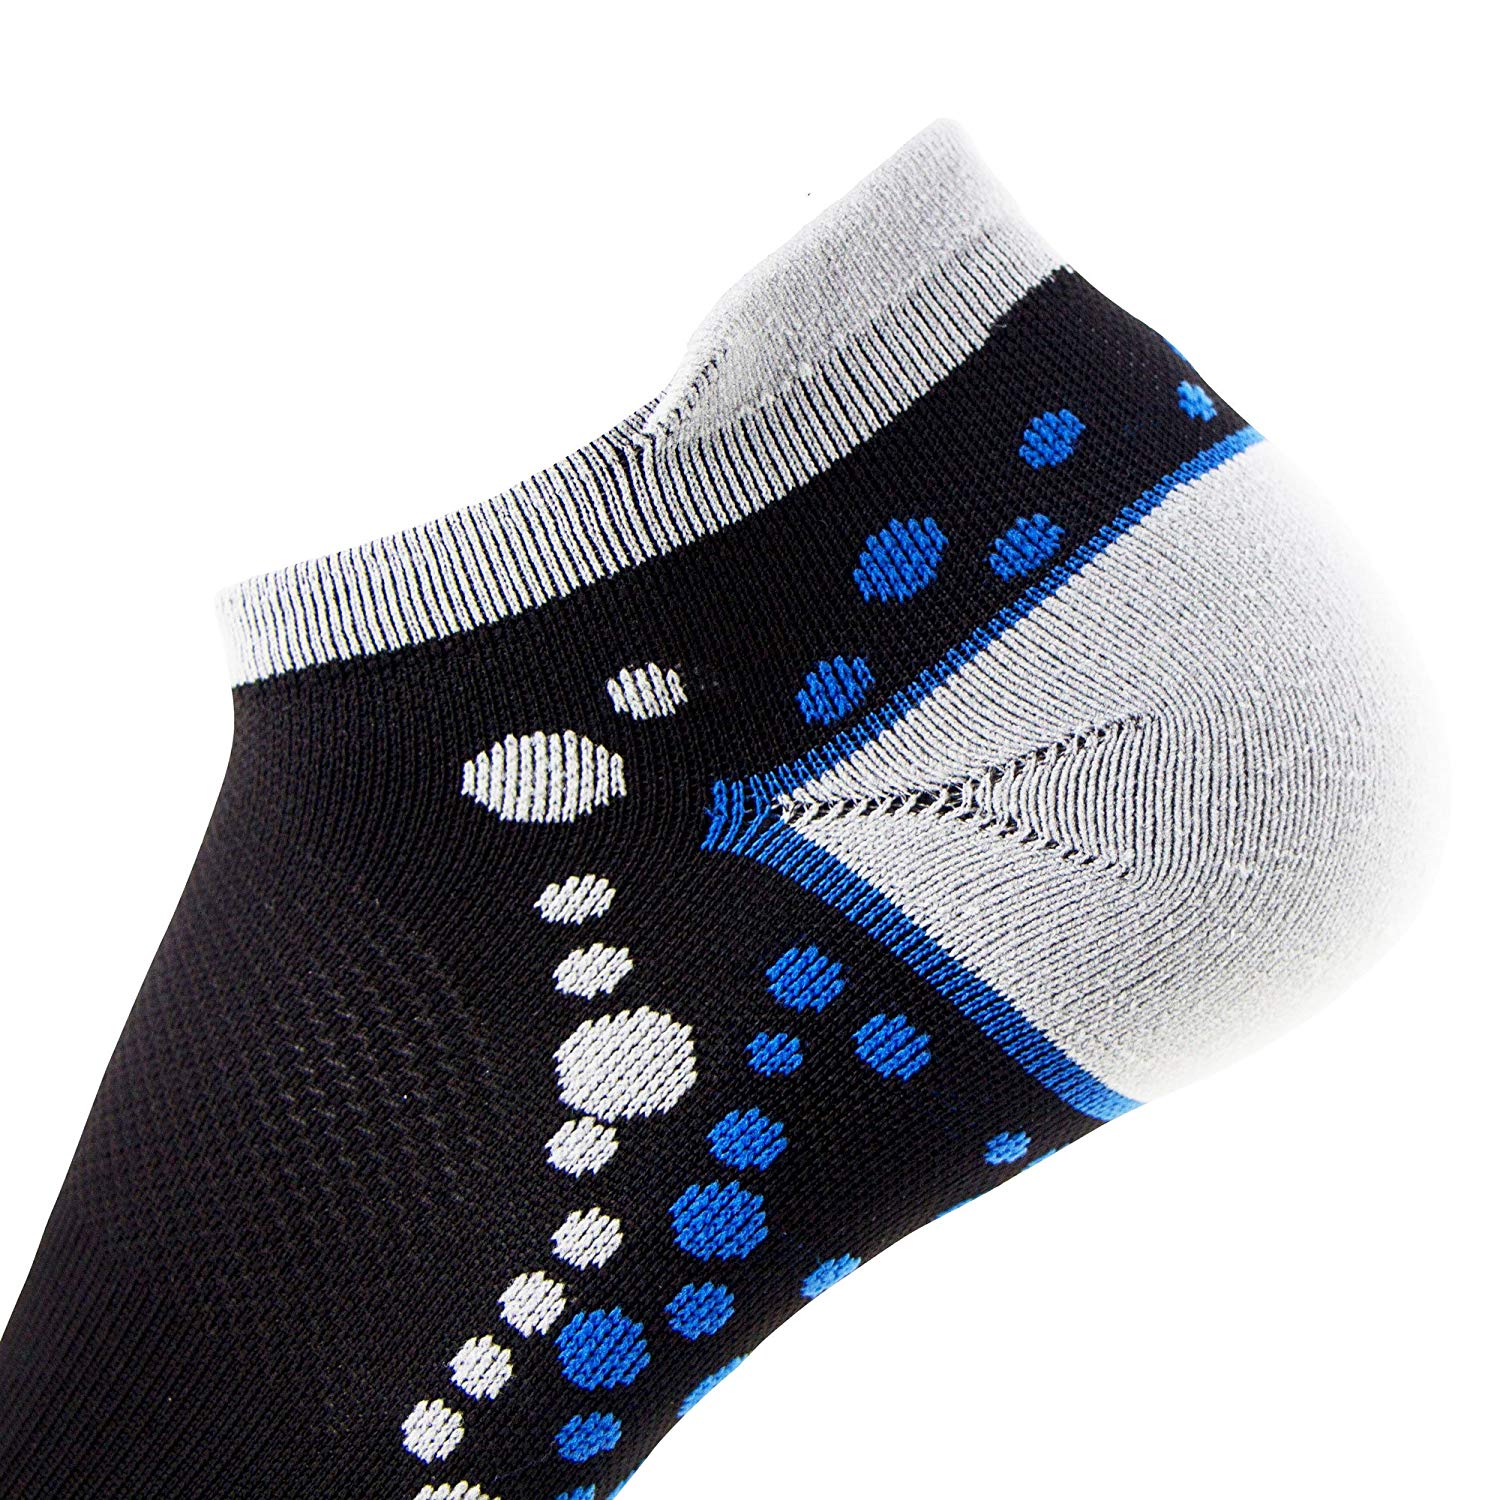 No-Show Anti-Blister Running Socks - Moisture Wicking Sport Socks for Men, Women